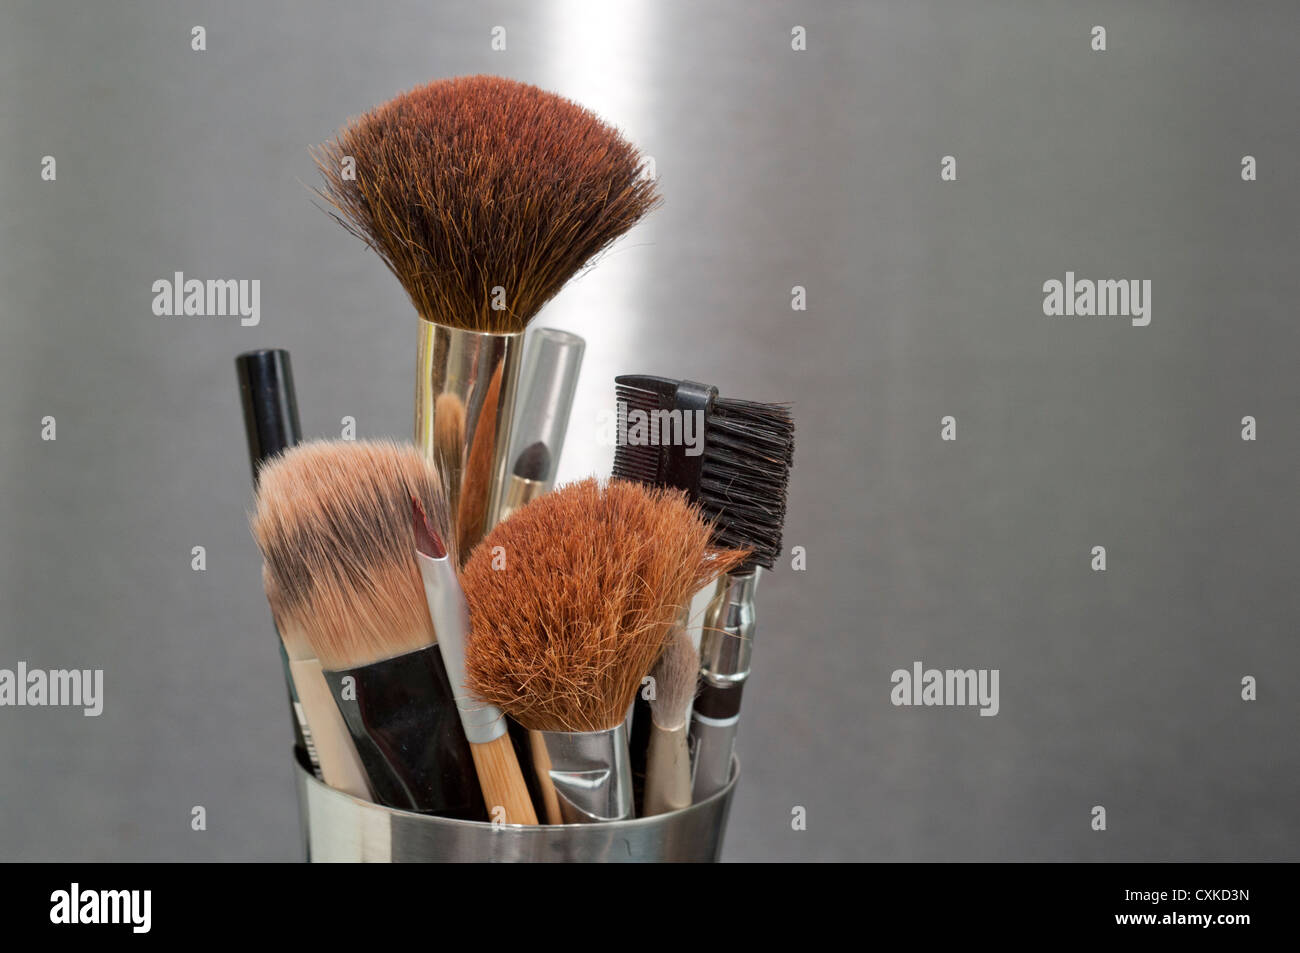 Make up brushes Stock Photo